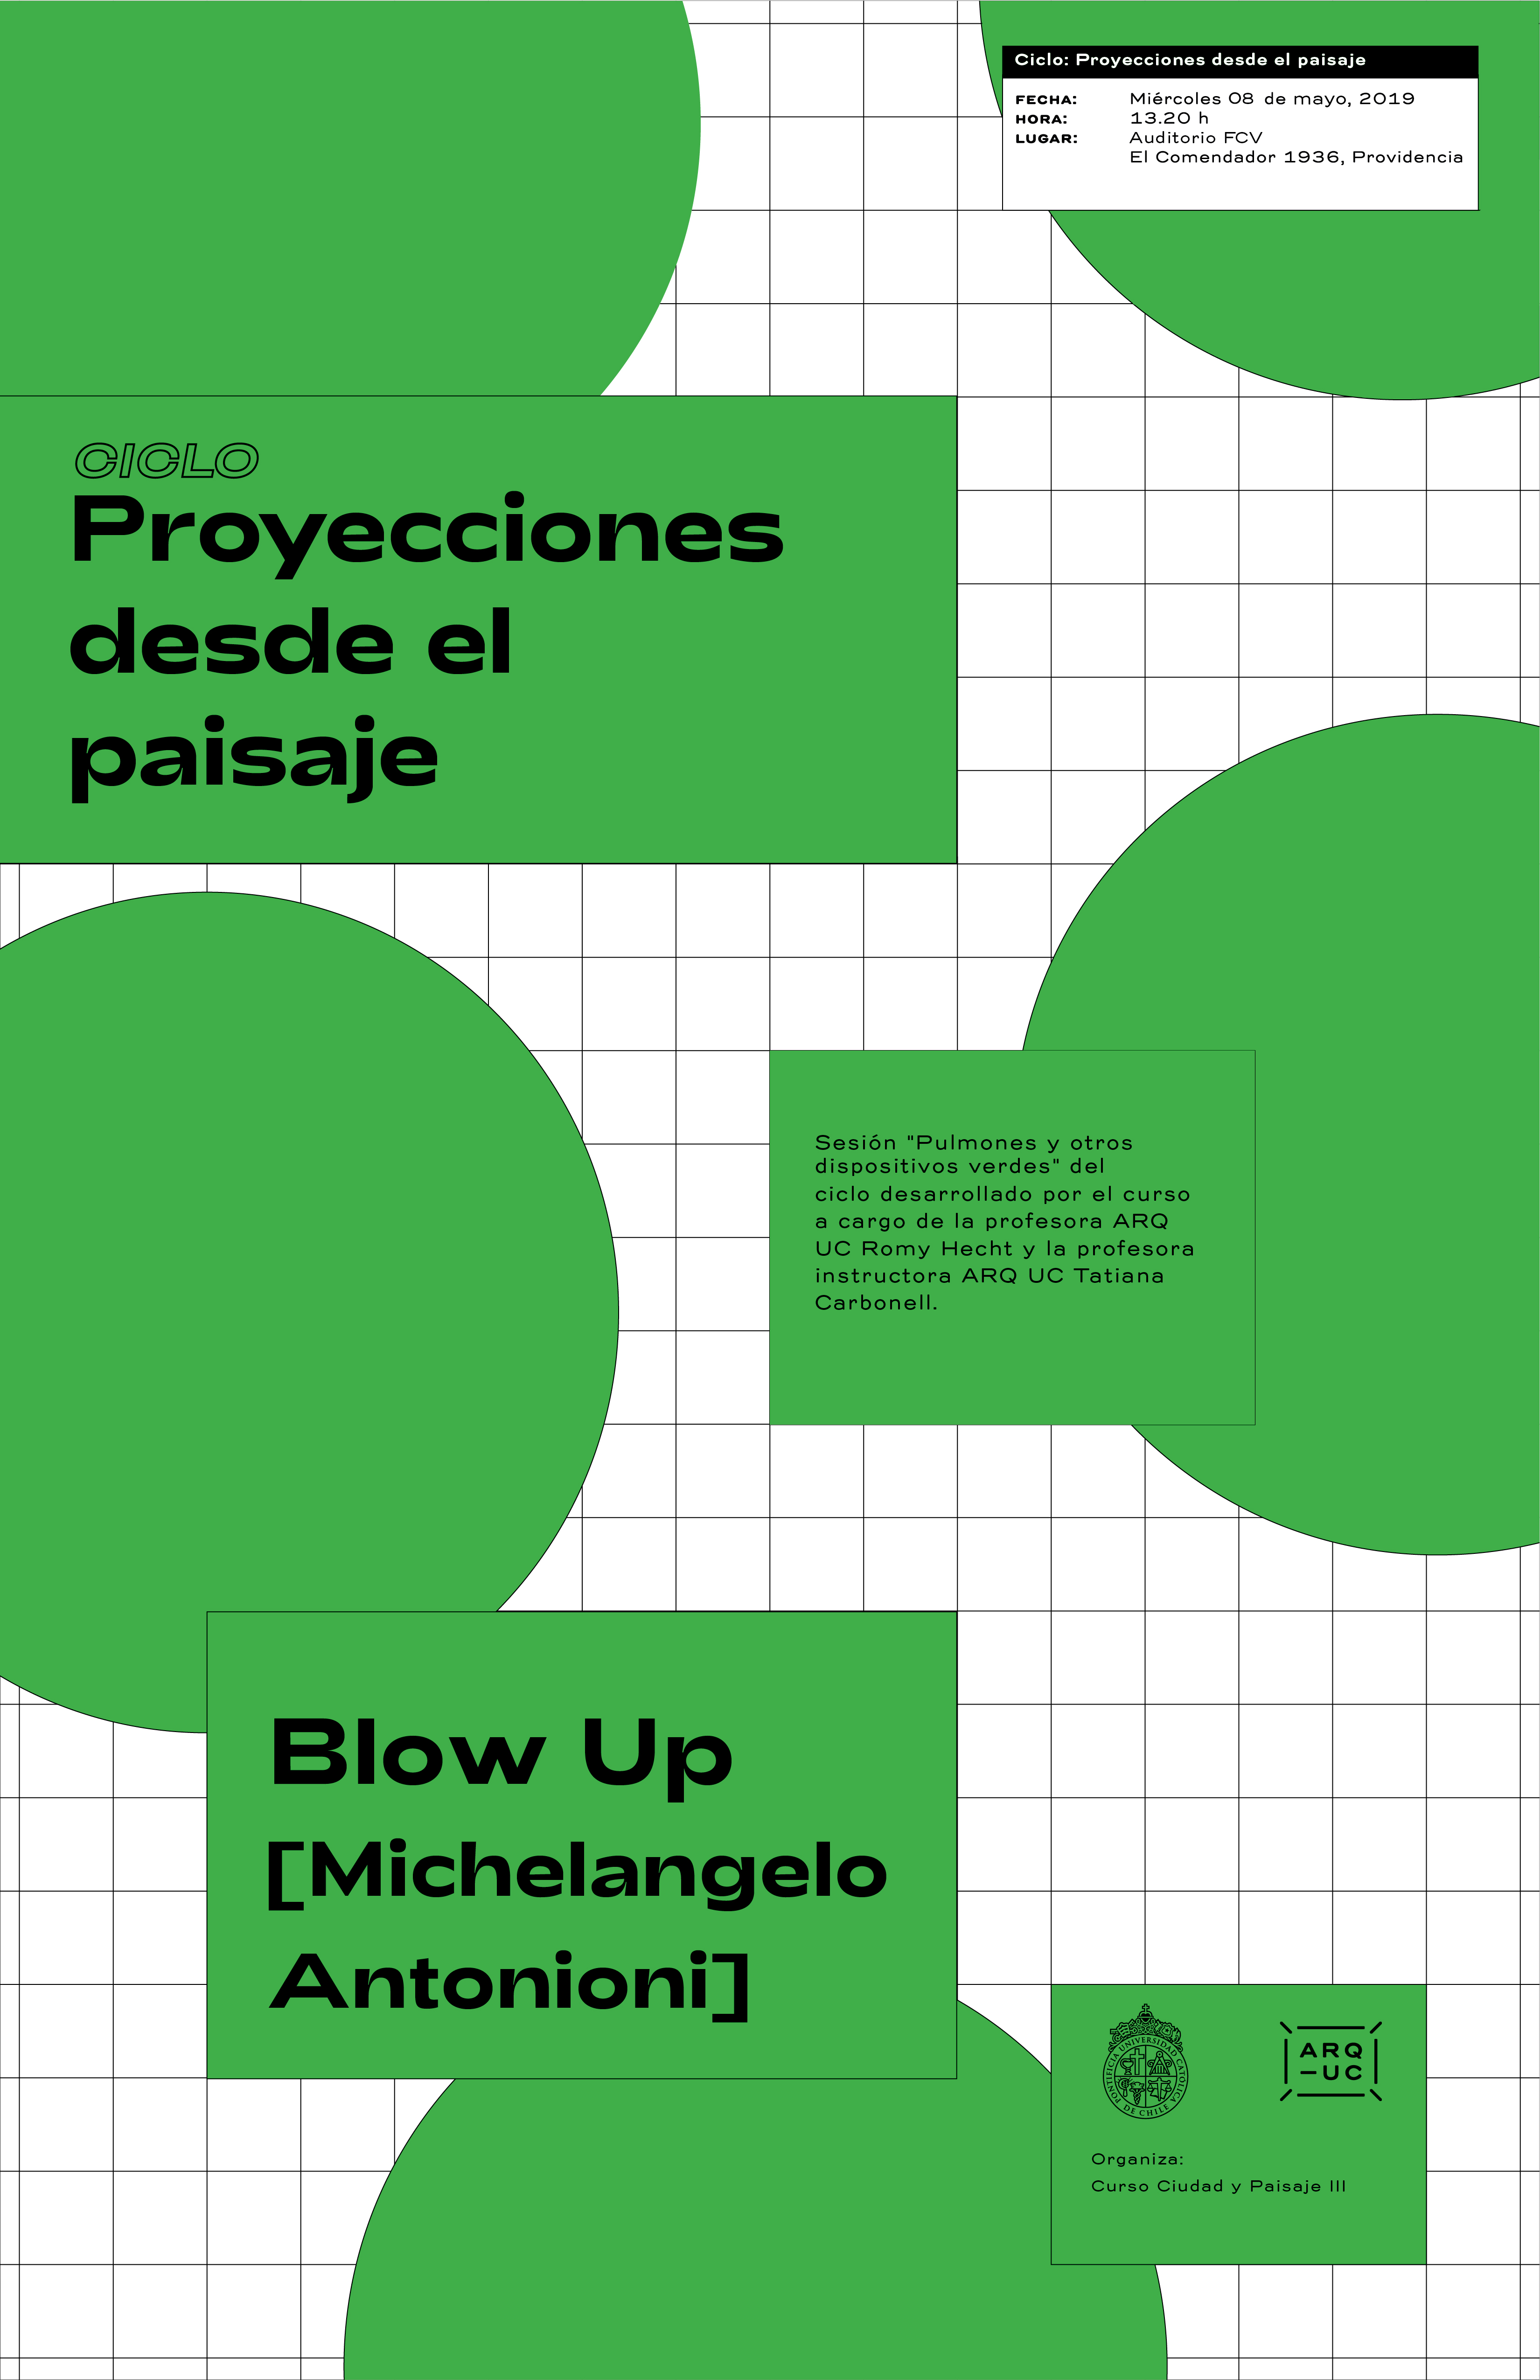 19-05-08_Ciclo_Proyecciones_desde_el_paisaje_Pulmones_y_otros_dispositivos_verdes_afiche1.jpg